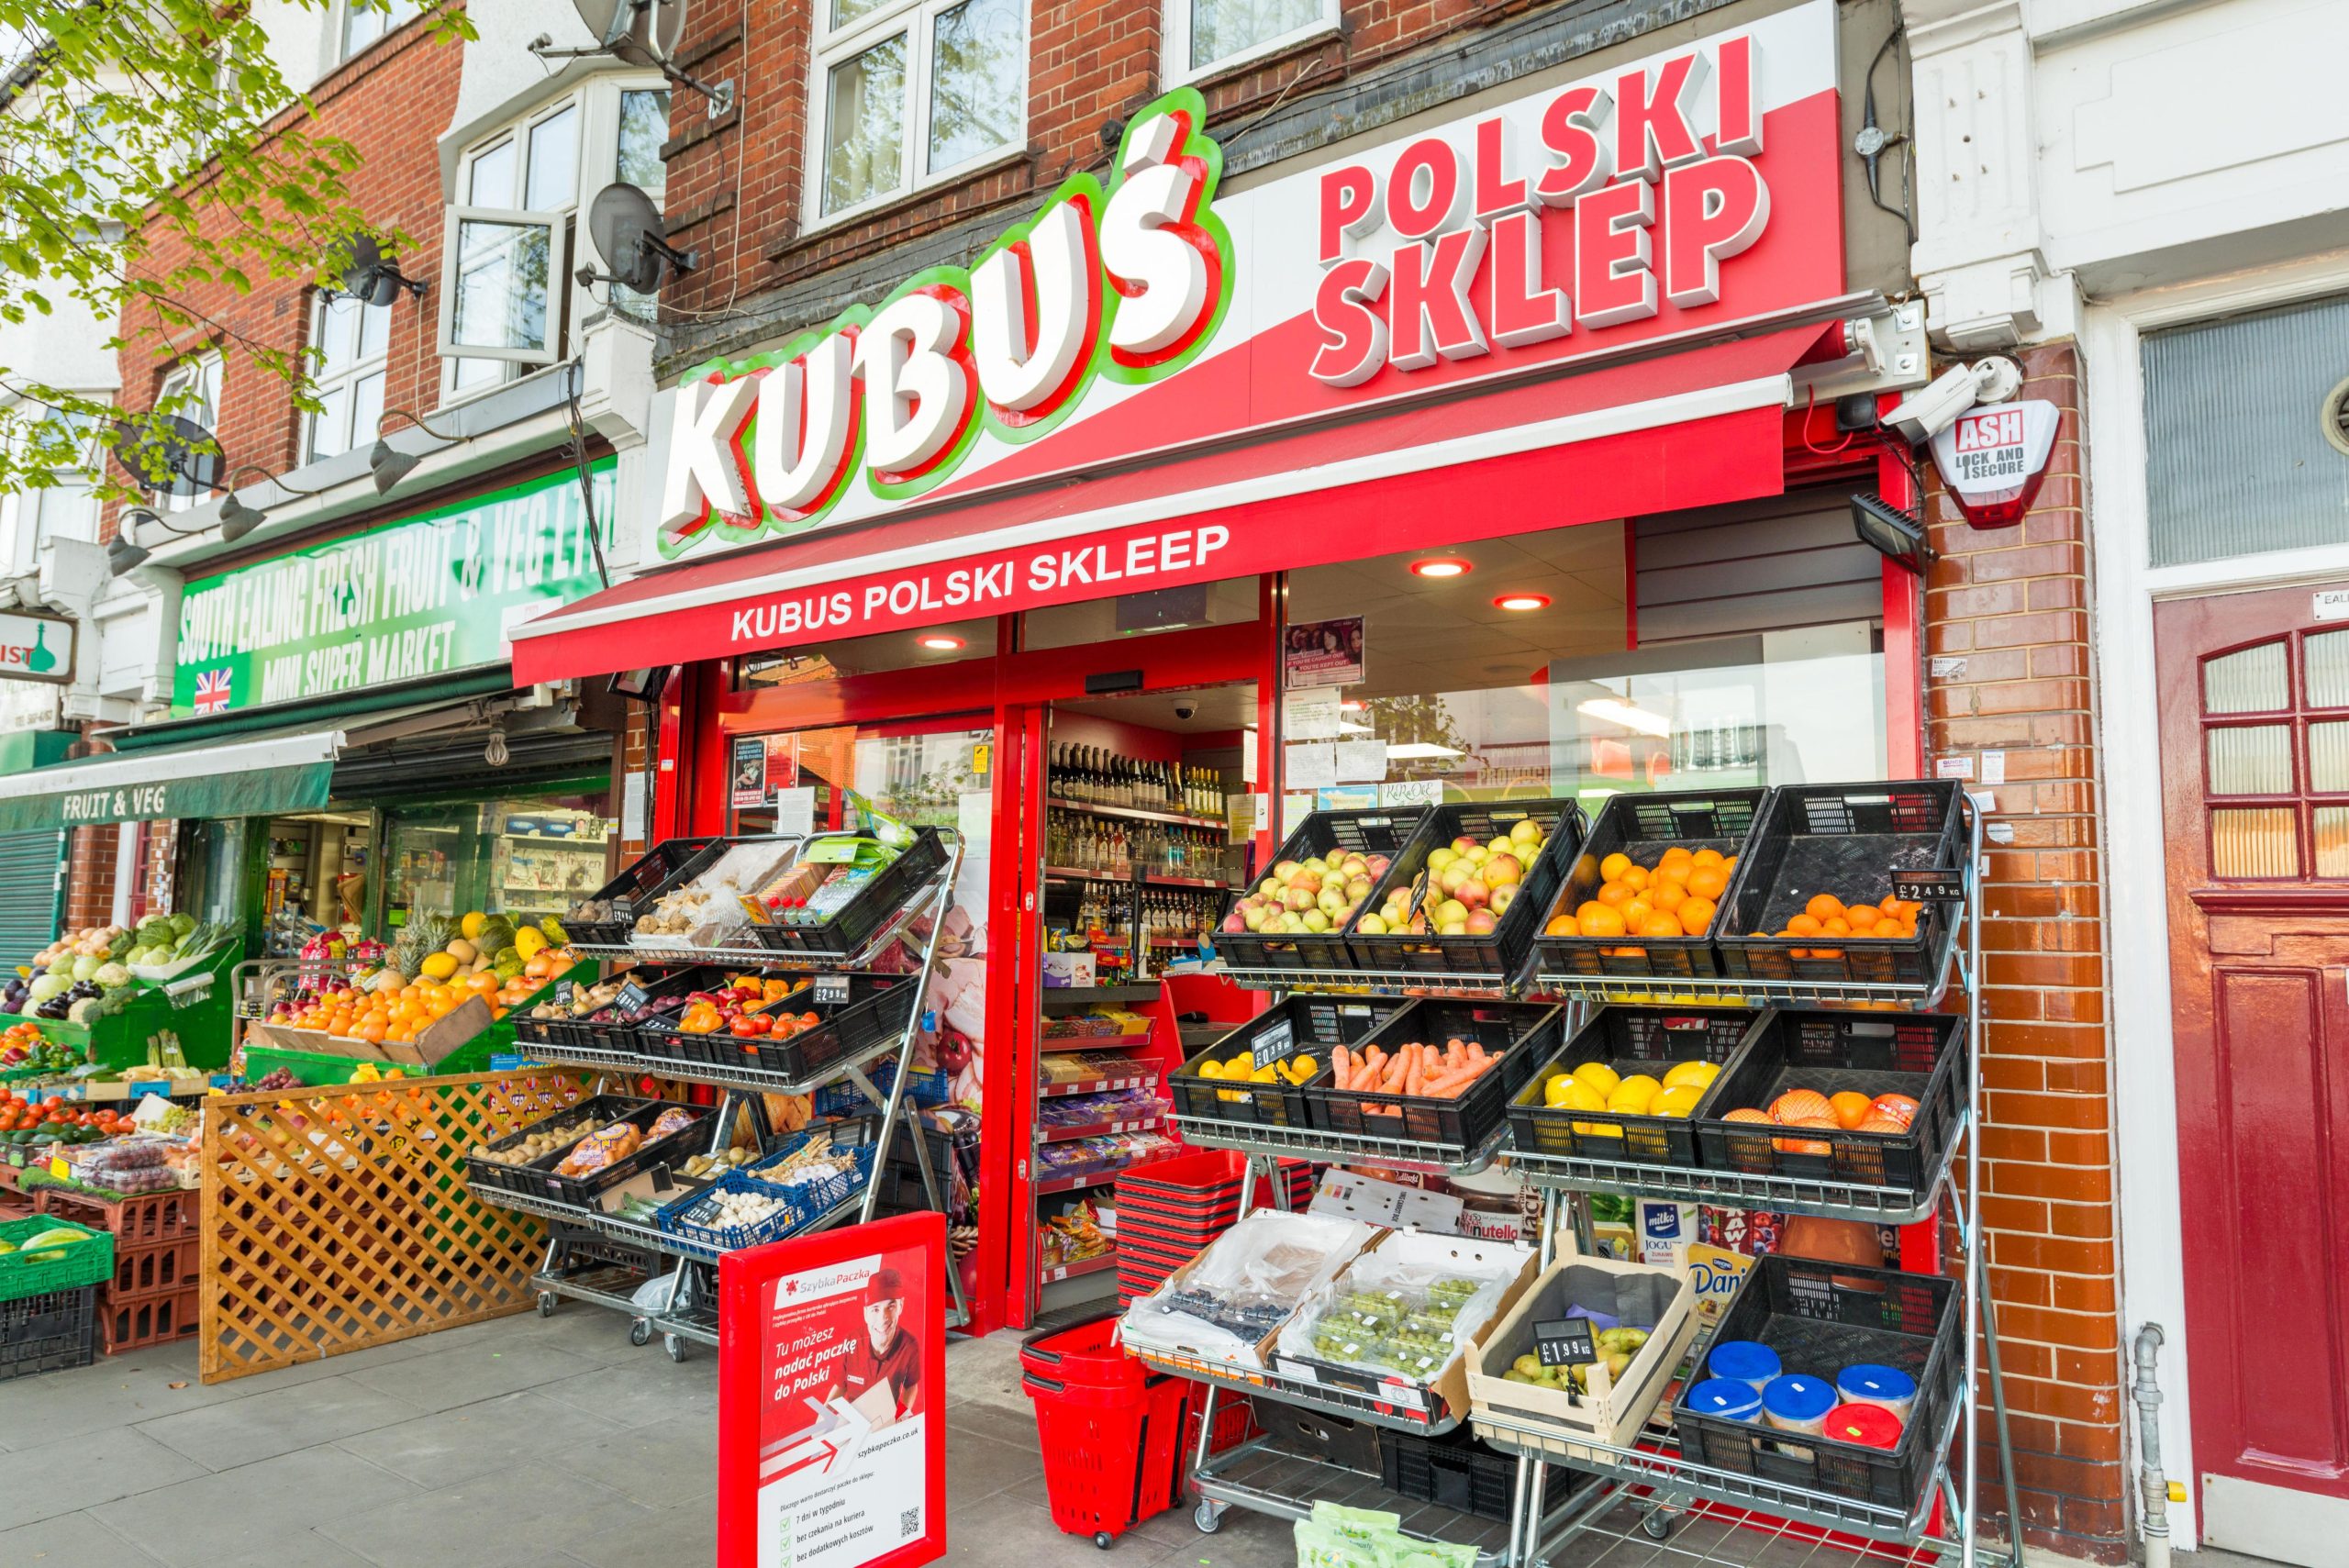 Las delicias locales se venden en las tiendas polacas, pero los supermercados compran al por mayor pollo, pescado, pavo y jamón